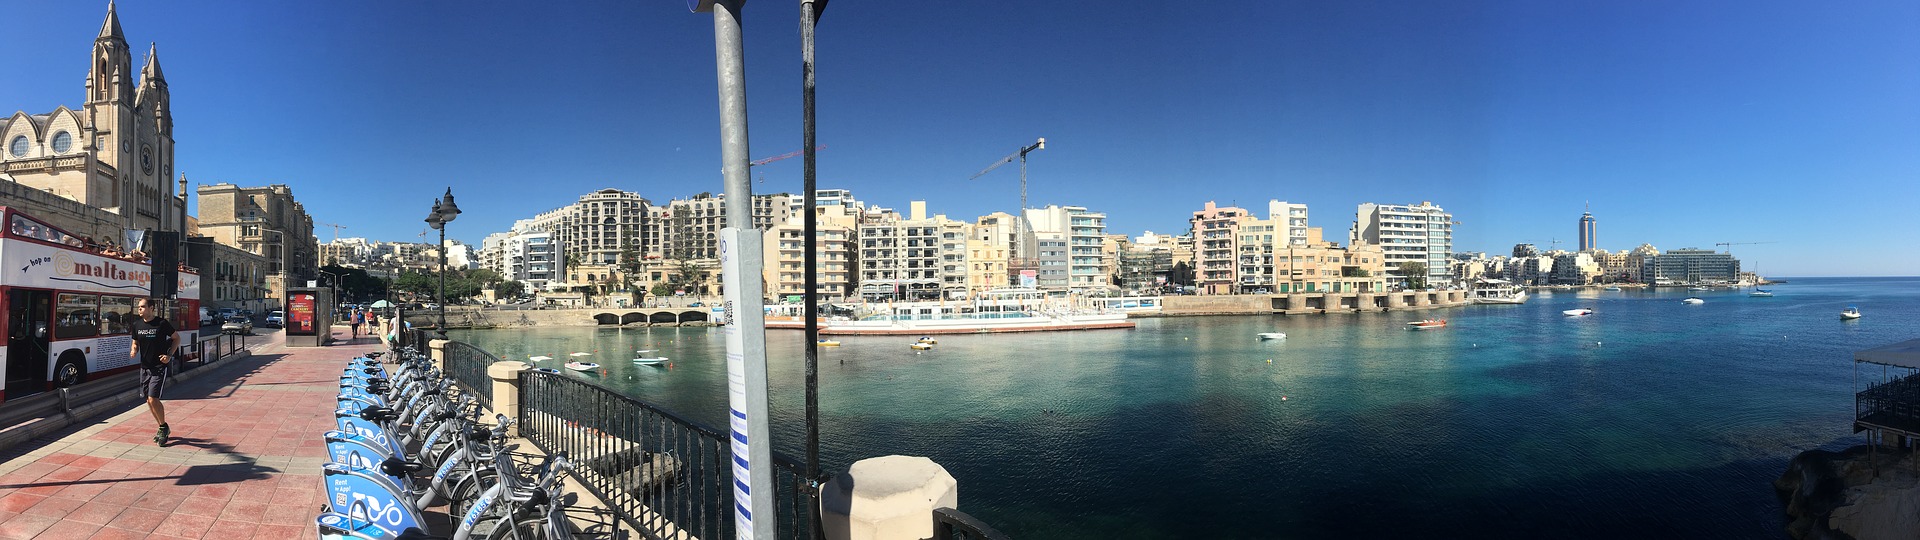 Labranda Riviera Pauschalreise nach Malta ab 135,00€